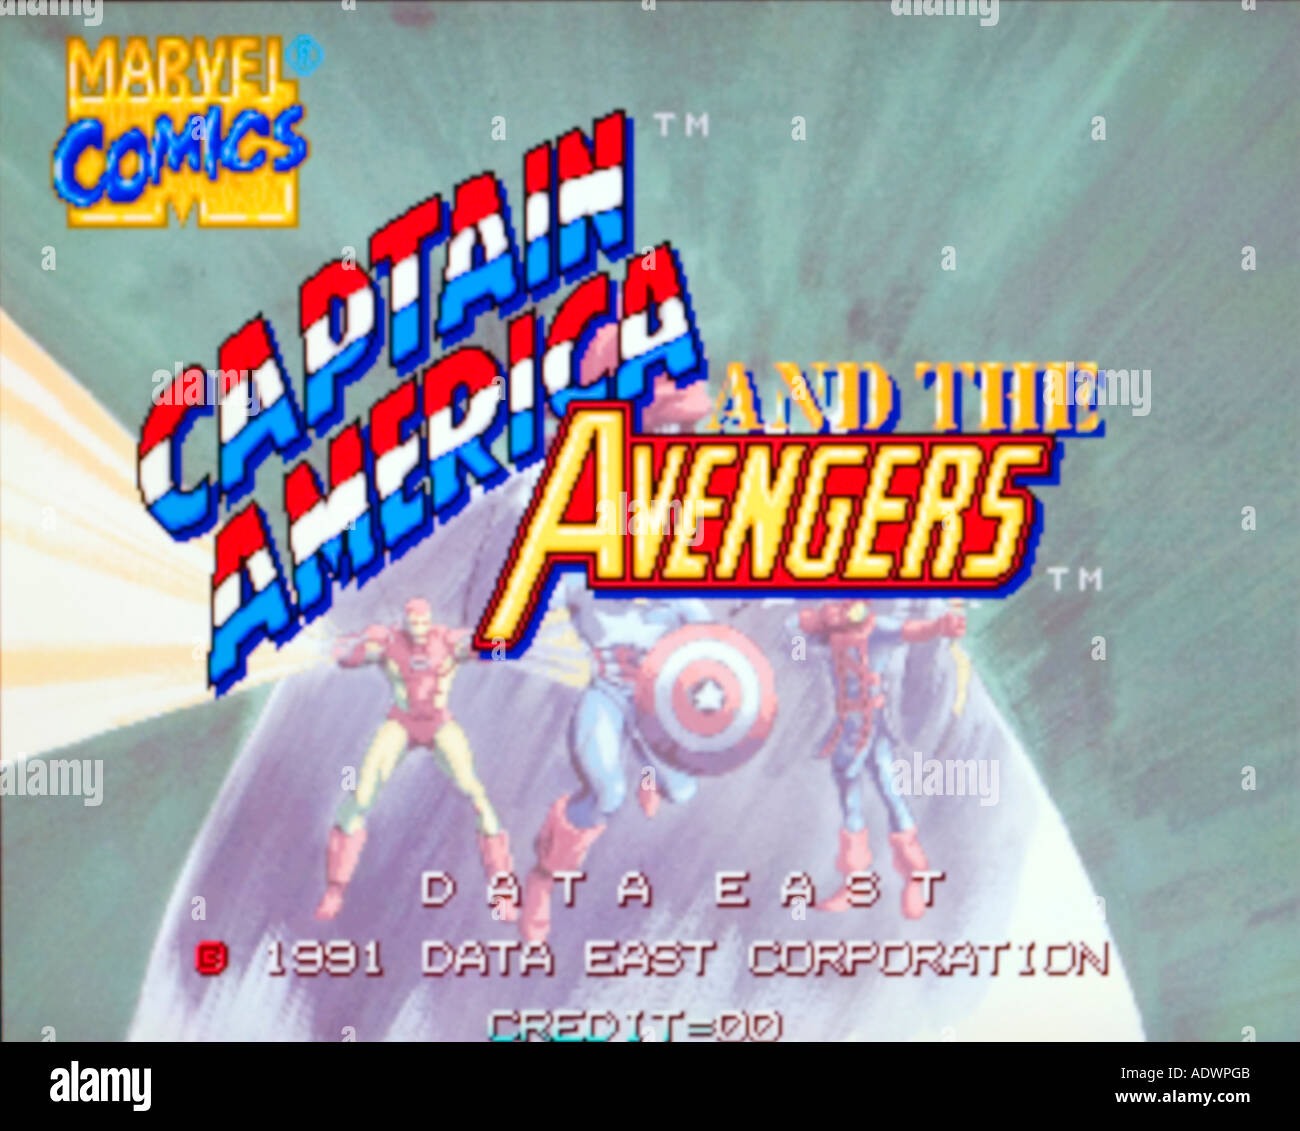 Marvel Comics Captain America und The Avengers Daten Ost 1991 Vintage Arcade Videospiel Screenshot - nur zur redaktionellen Nutzung Stockfoto